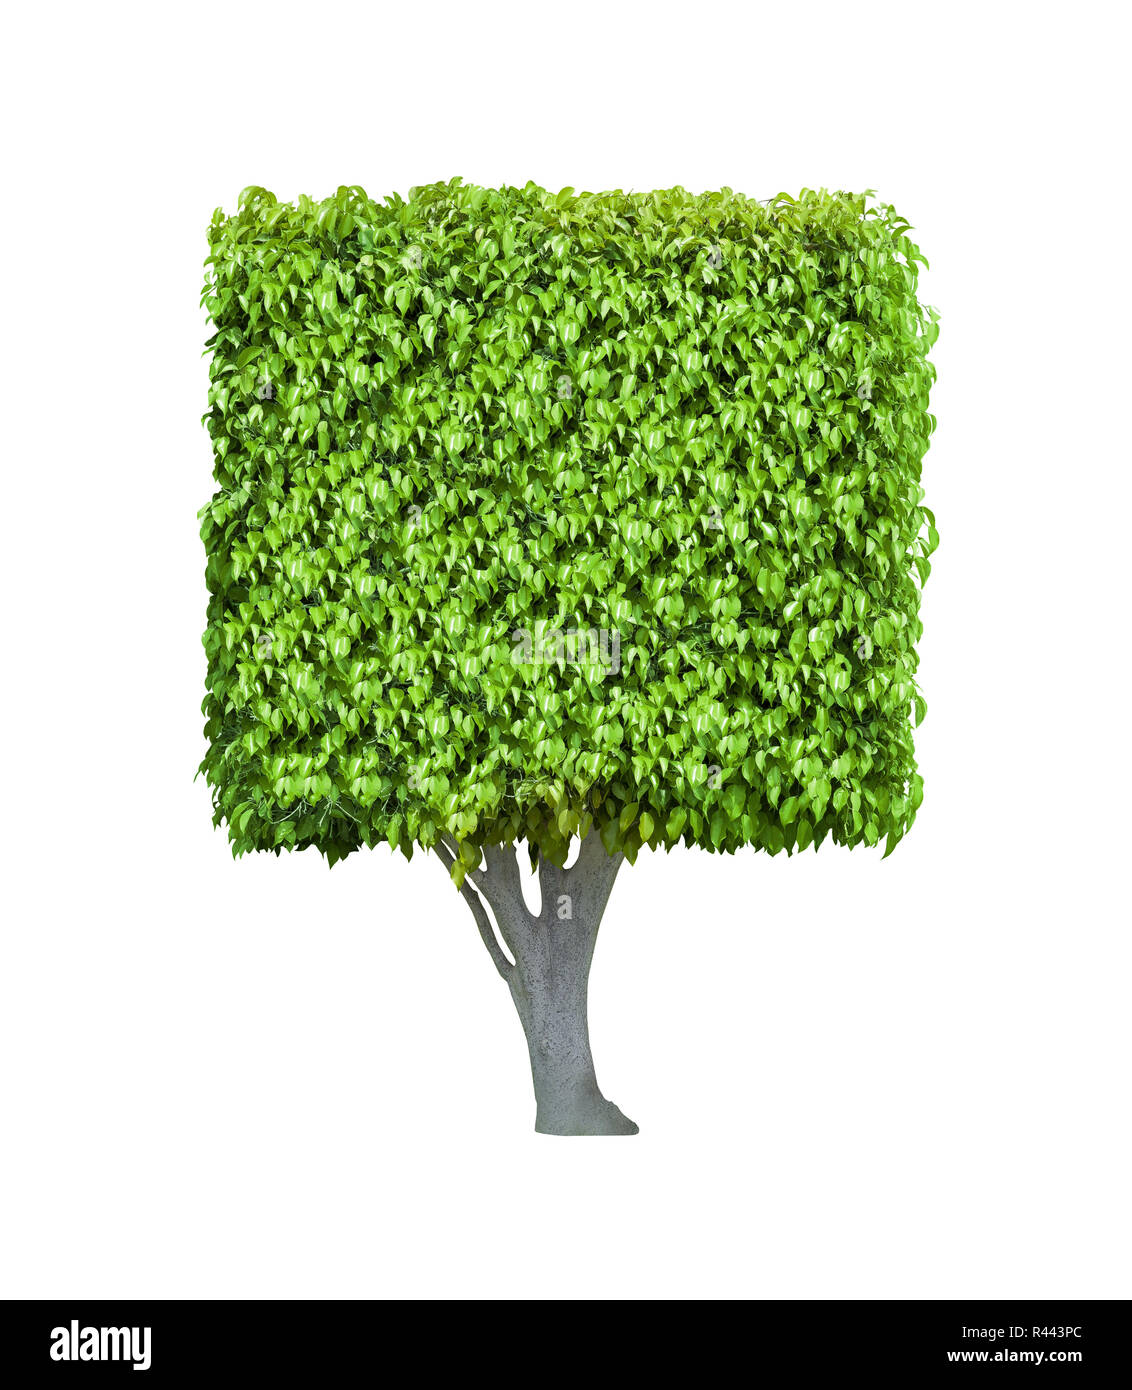 Box shaped tree isolated on white background Stock Photo